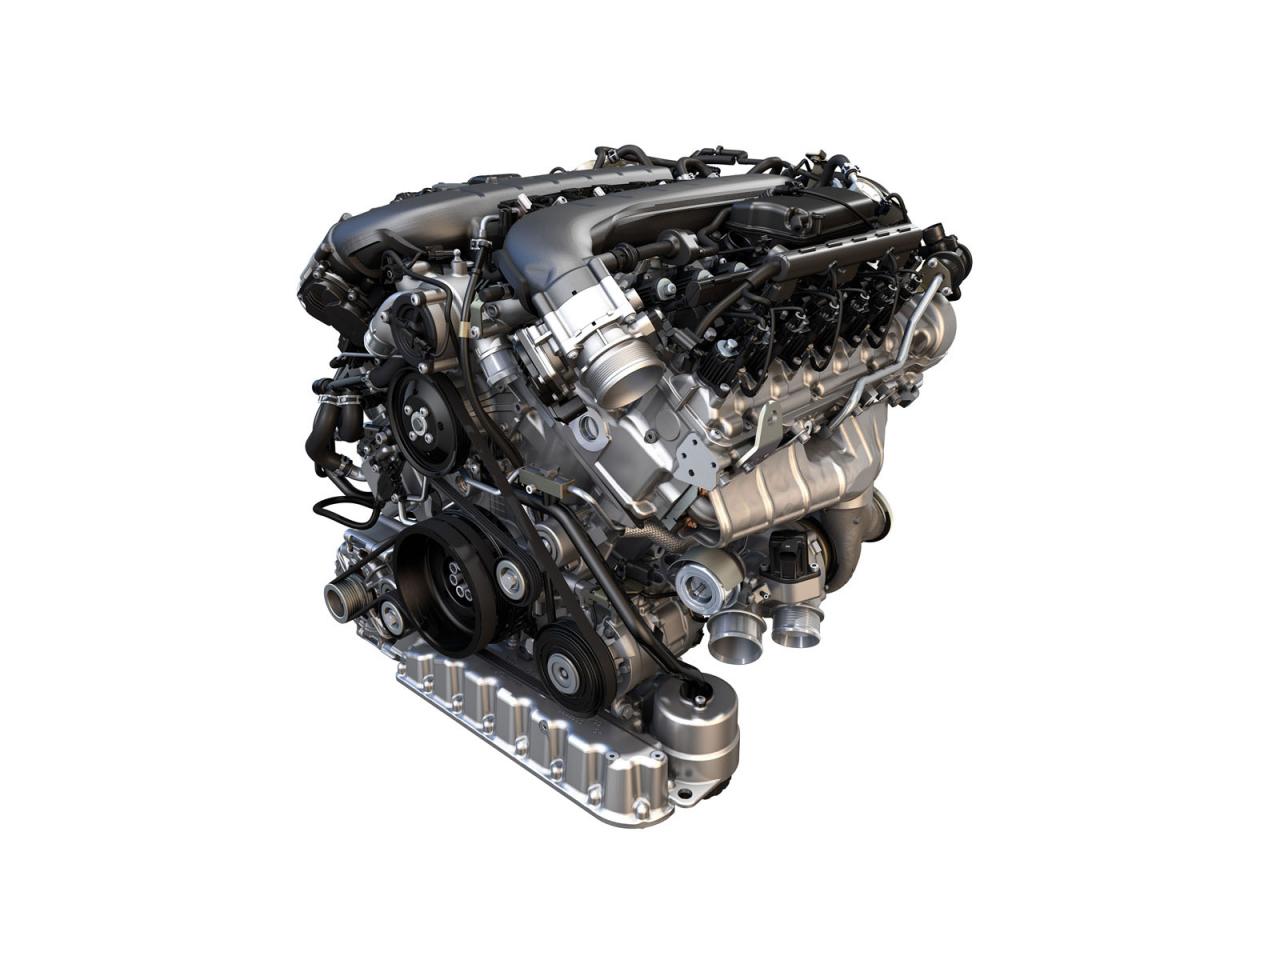 Από νέο W12 6,0 λίτρων έως τρικύλινδρο κινητήρα 1,0 λίτρου με 272 ίππους ετοιμάζει η VW